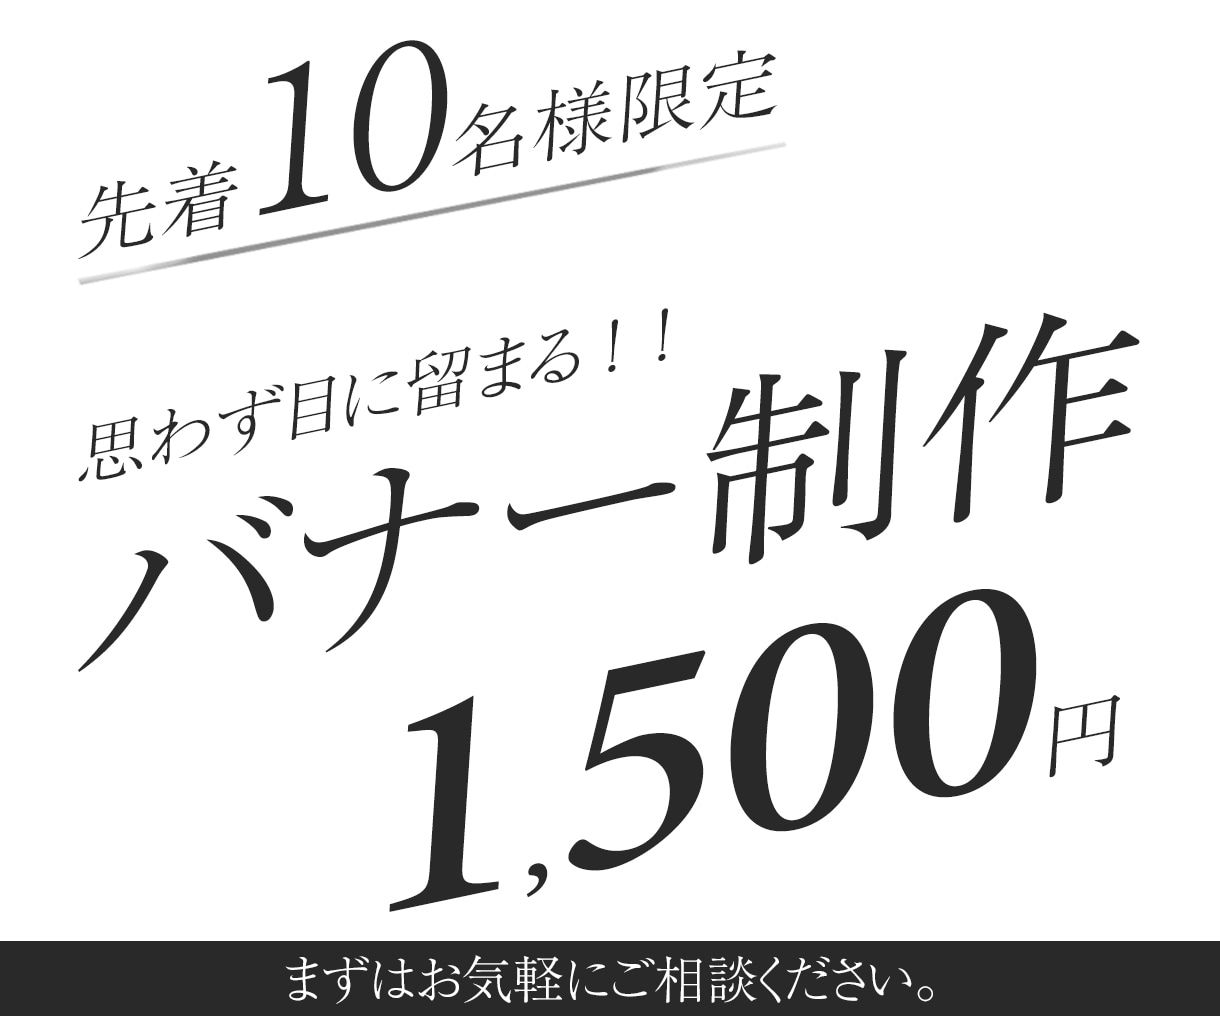 バナー、その他WEB画像１５００円で制作致します 伝わるデザインをキャンペーン価格の１５００円で制作致します！ イメージ1